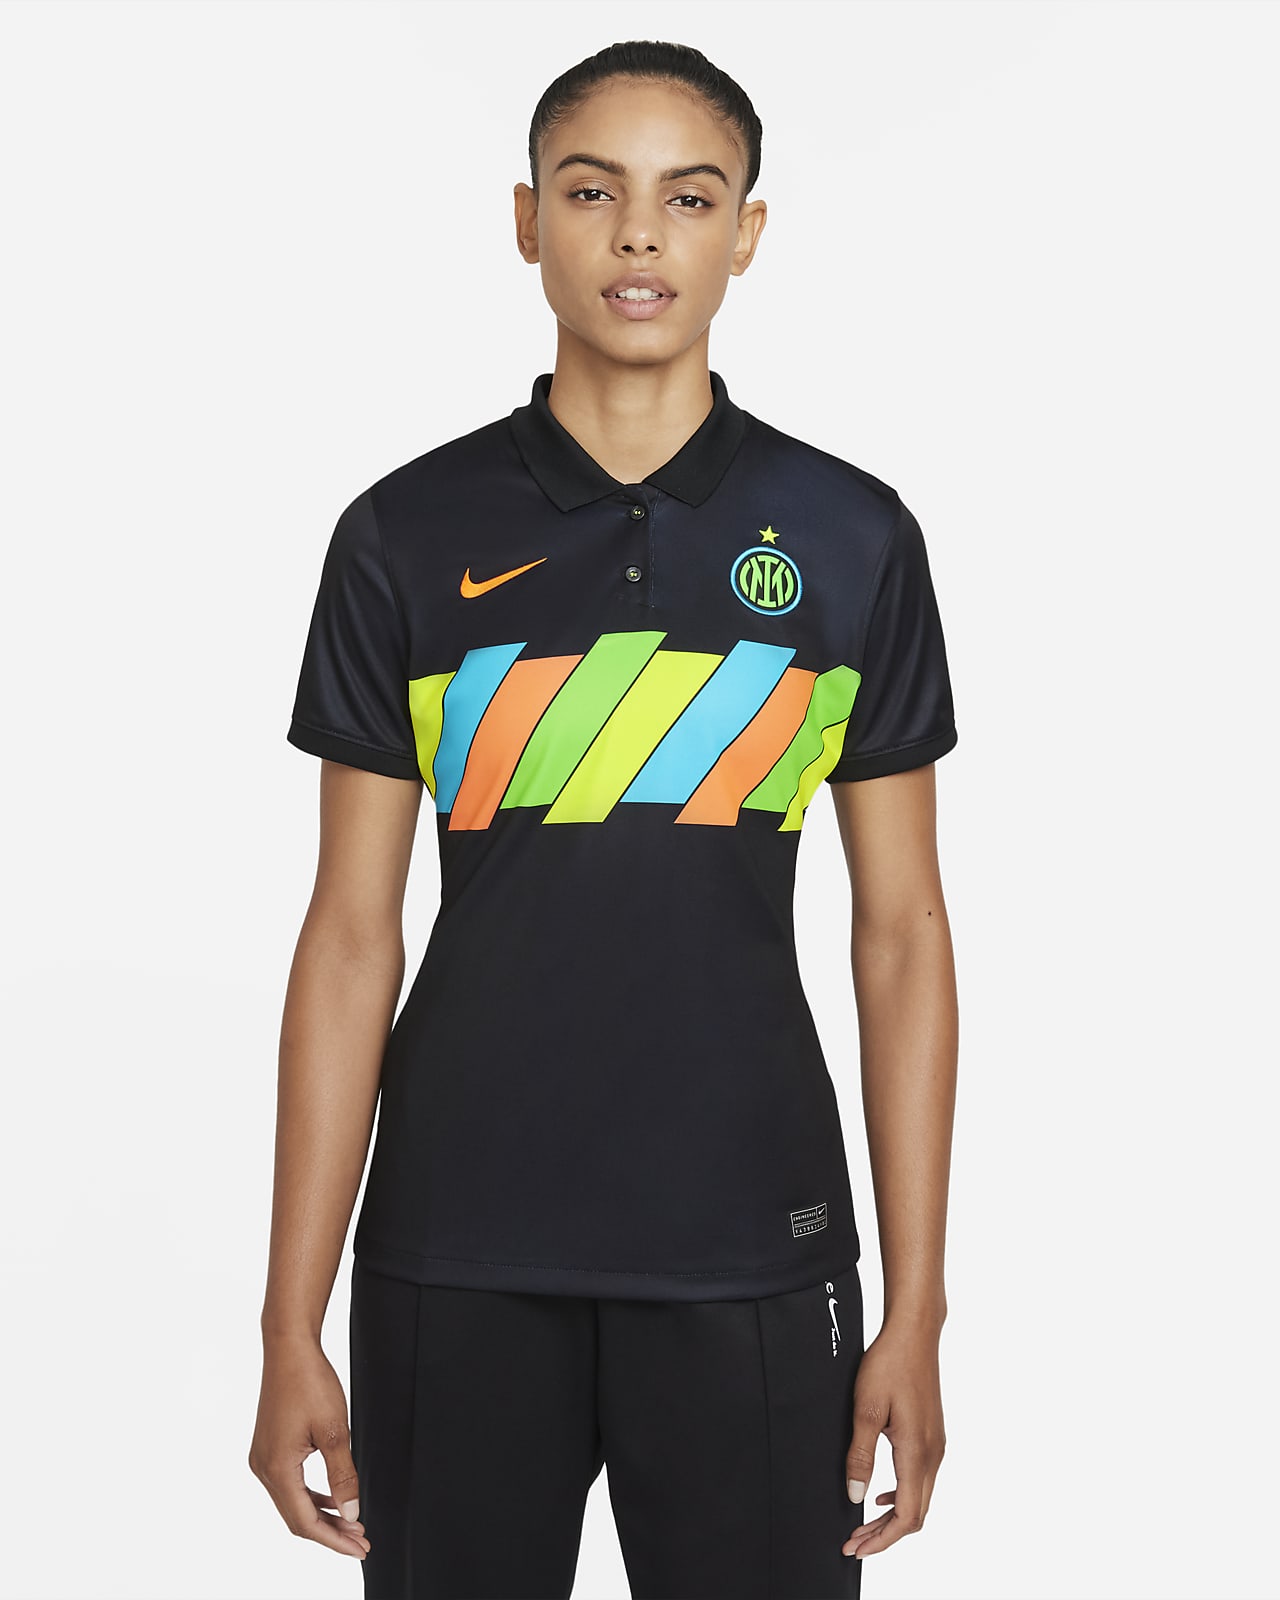 wake up Playing chess disk Inter Milan 2021/22 Stadium Third Women's Nike Dri-FIT Football Shirt. Nike  SA